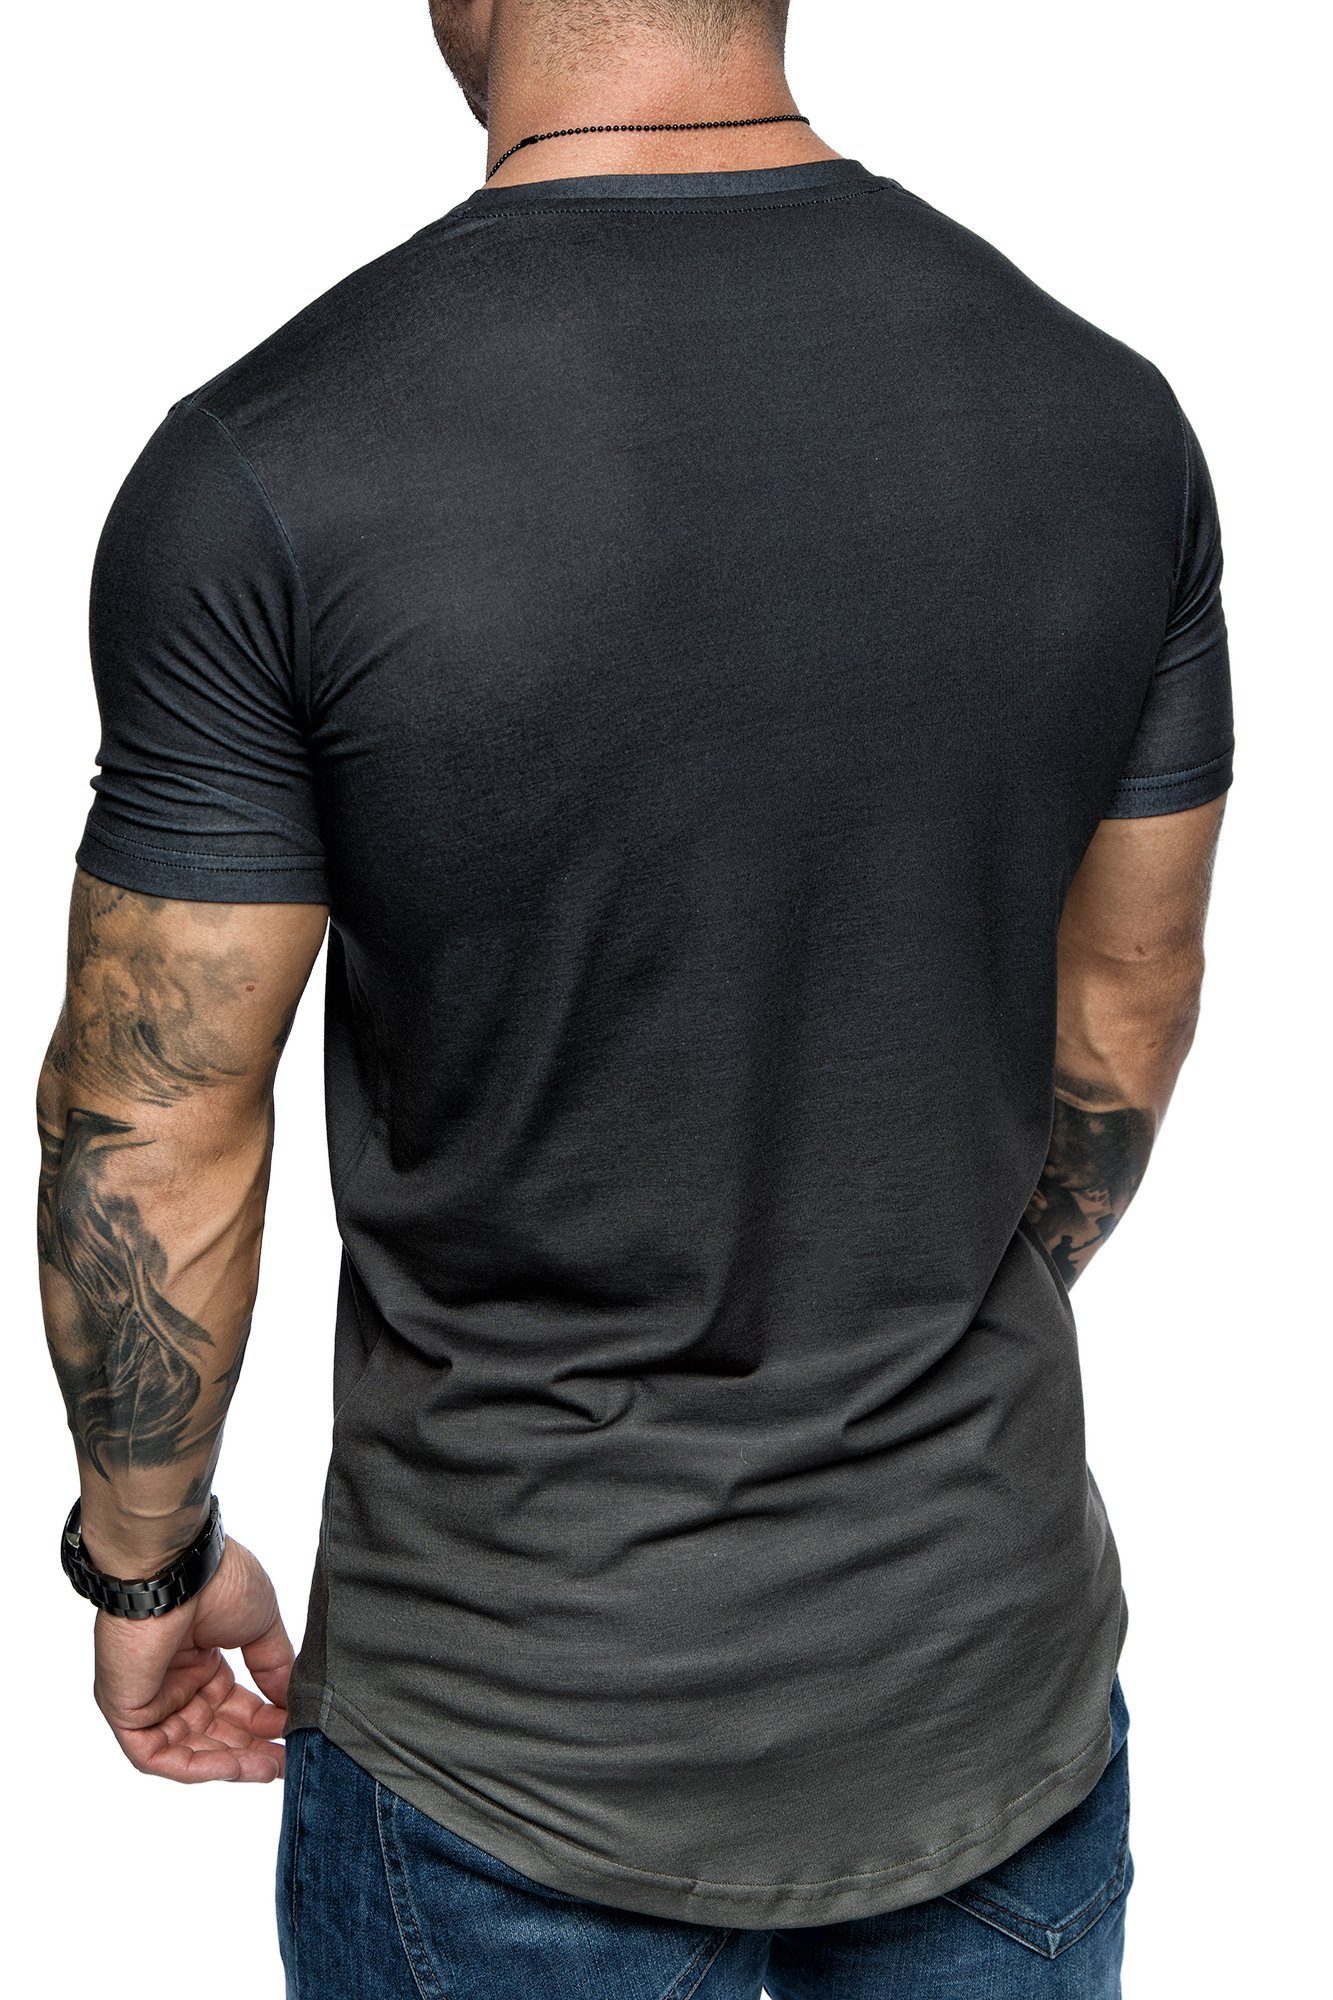 REPUBLIX T-Shirt Crew Neck Rundhalsausschnitt Herren LIAM Design mit Waterfall Oversize Schwarz/Olive Shirt